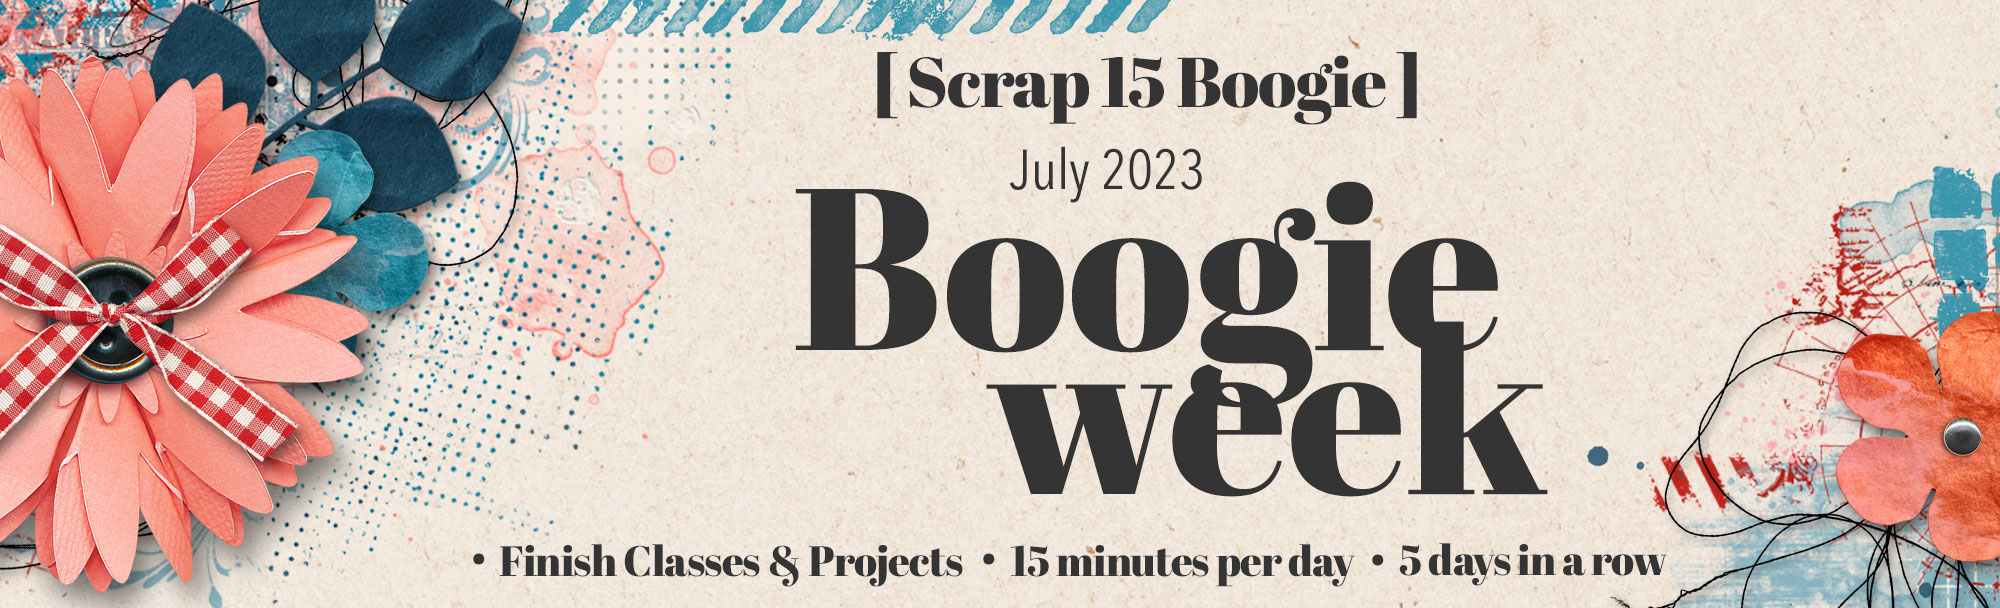 Boogie Week